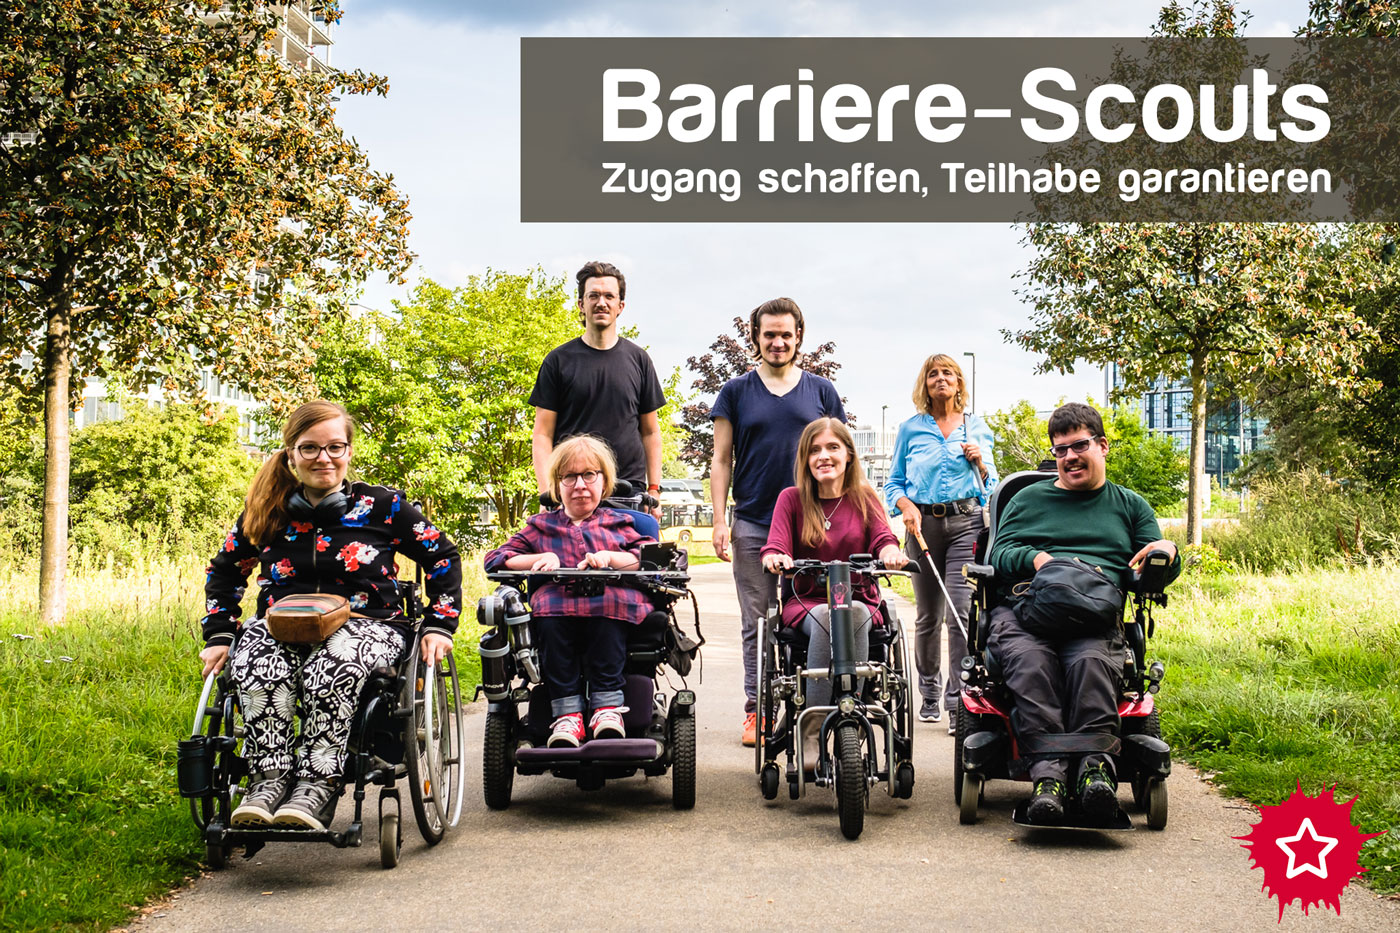 Bildbeschreibung: Sieben Menschen mit verschiedenen Behinderungen bewegen sich als Gruppe auf die Kamera zu. Einige sitzen z.B. im Rollstuhl, eine Frau benutzt einen Langstock. Darüber steht: Barriere-Scouts, Zugang schaffen, Teilhabe garantieren.